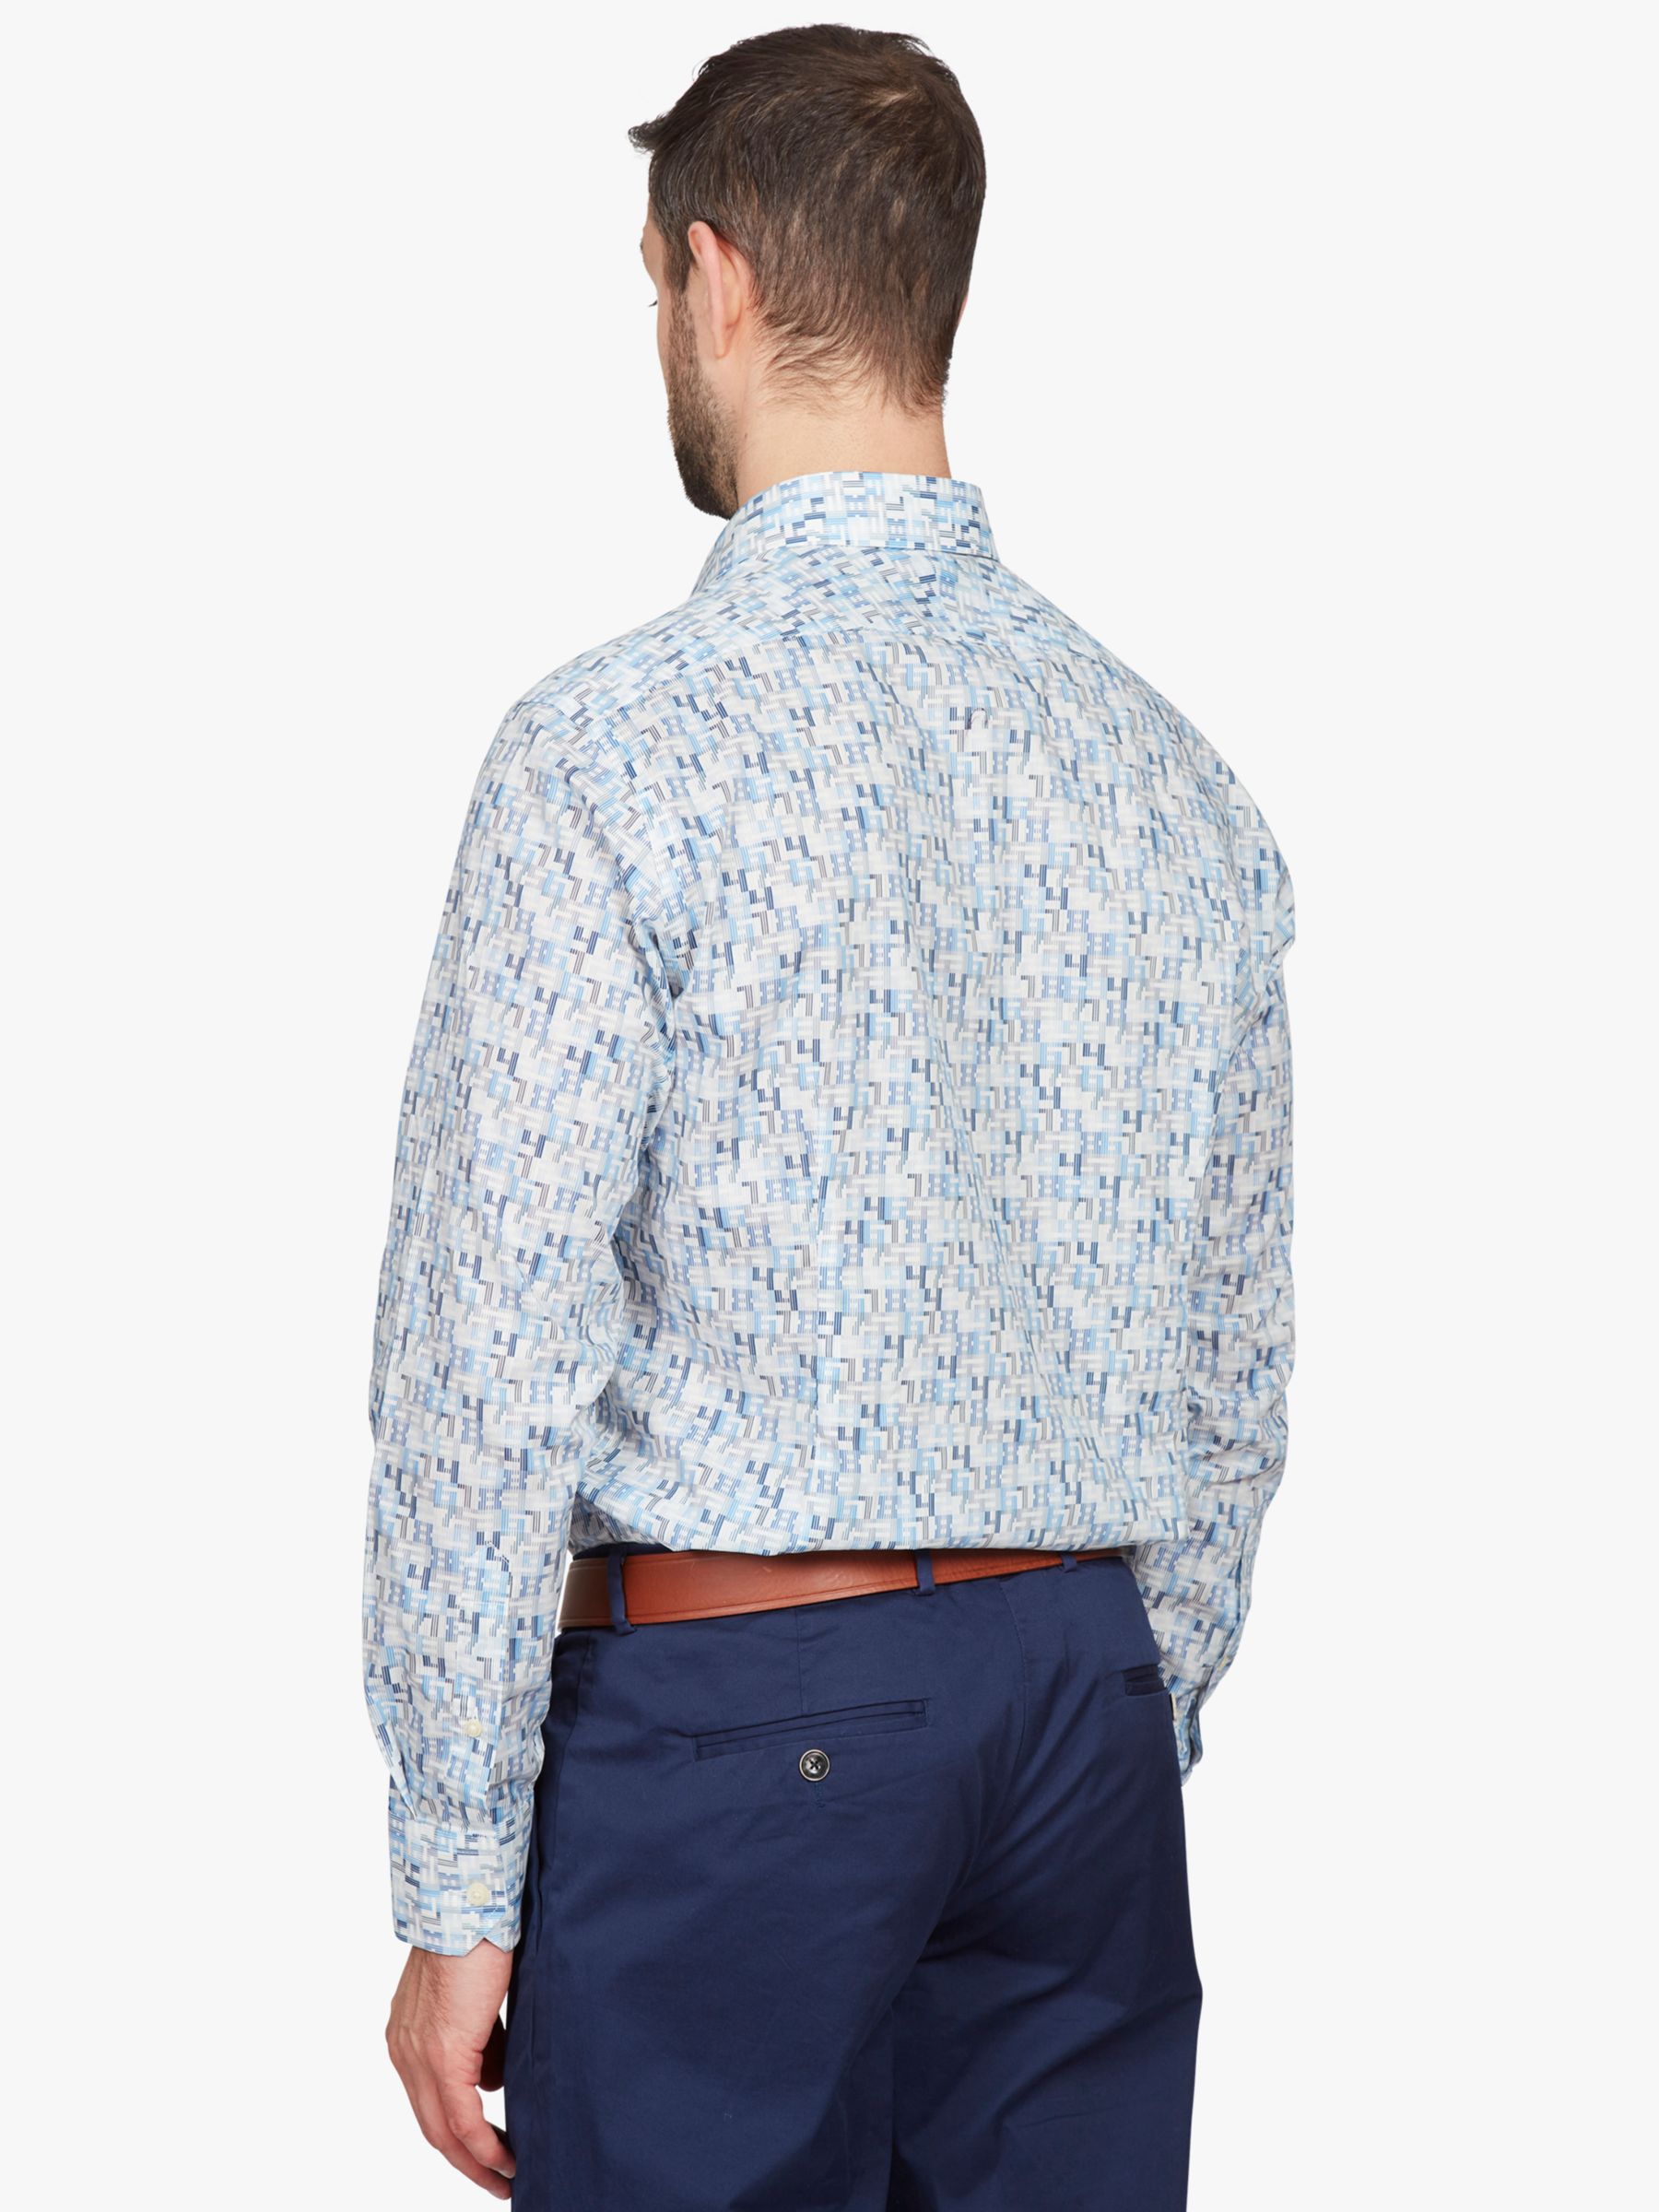 Simon Carter Liberty Fabric Magic Square Shirt, Blue/Multi, 15R